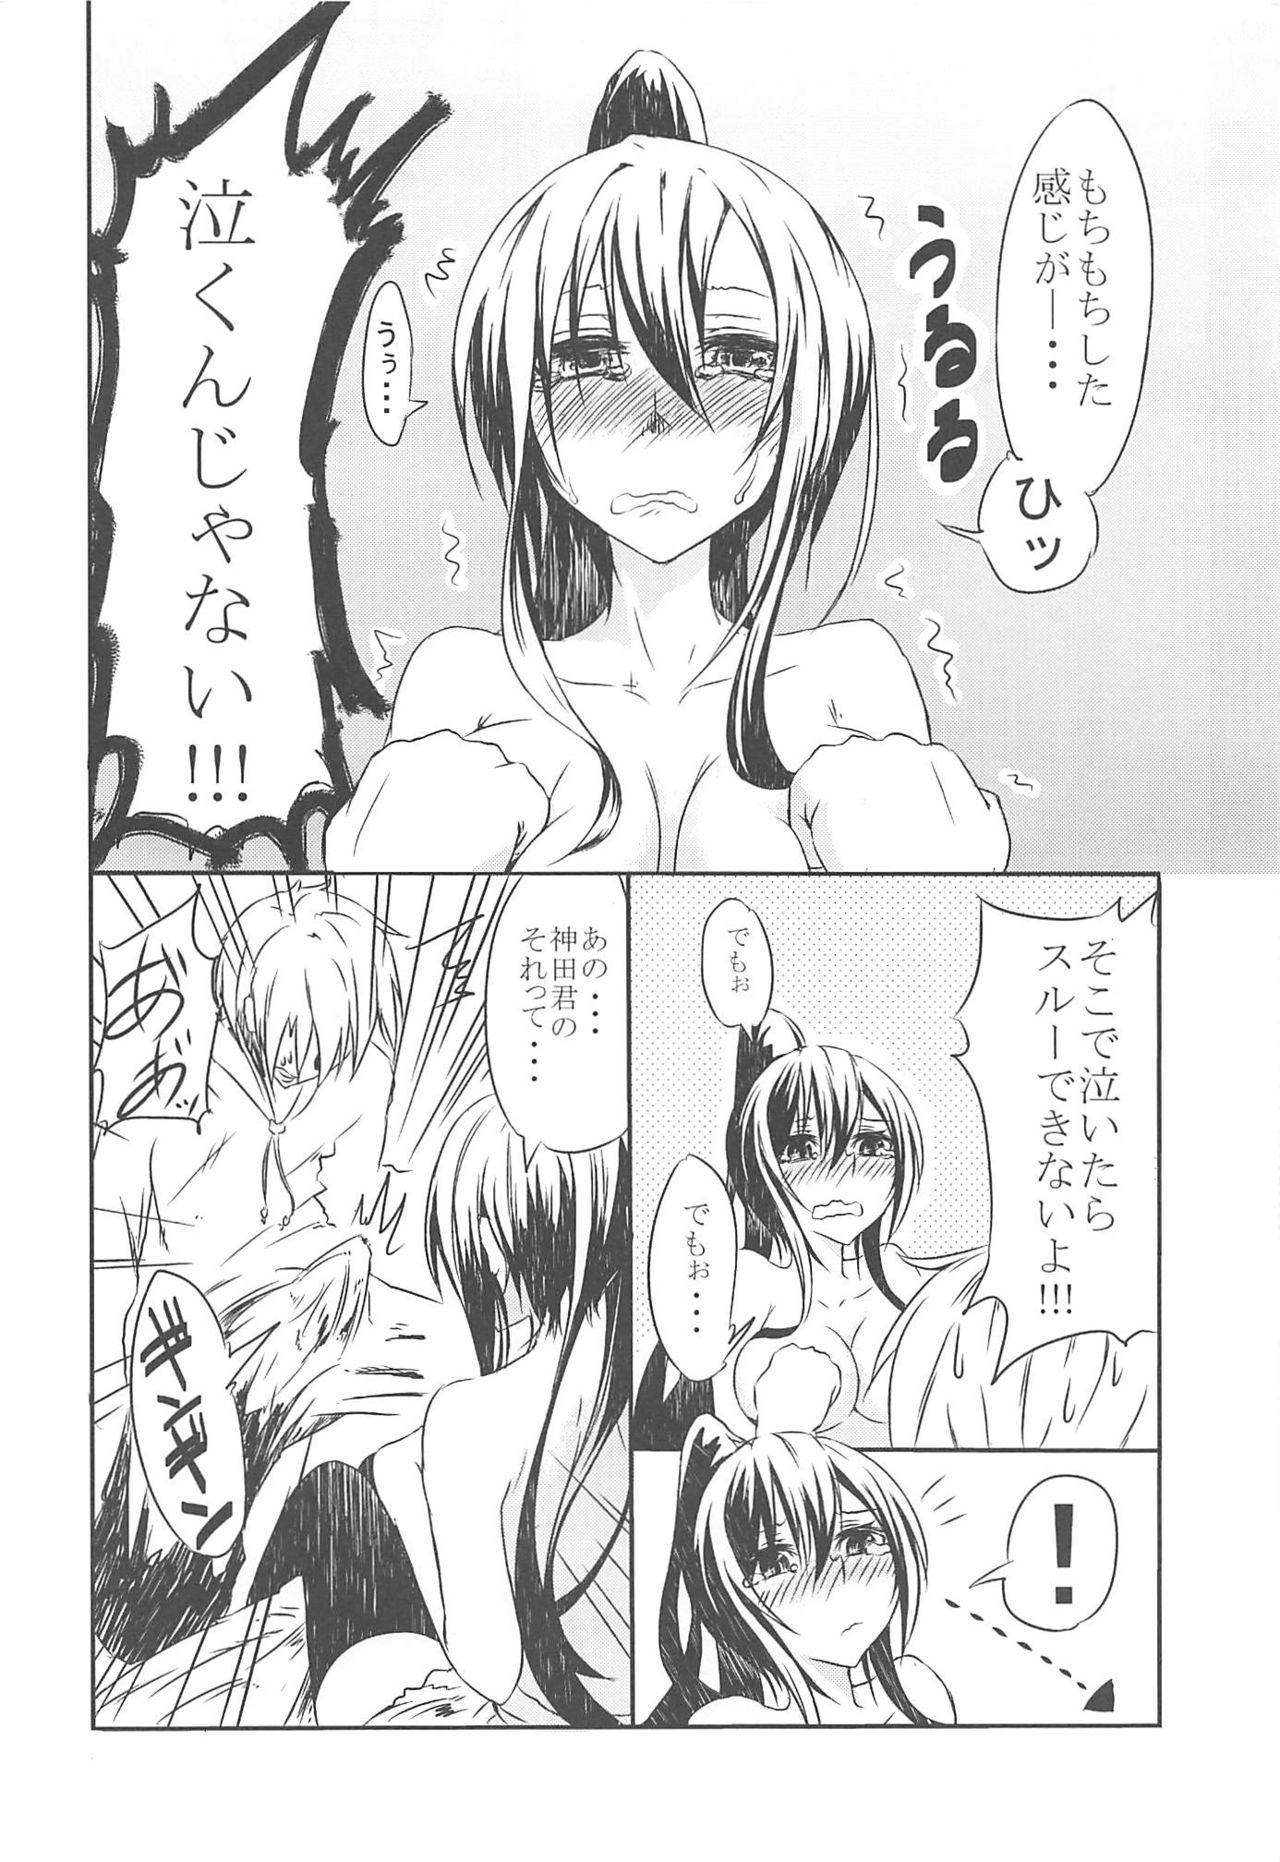 Tgirls Sakurasou no Ecchi na Kanojo - Sakurasou no pet na kanojo Dildos - Page 5